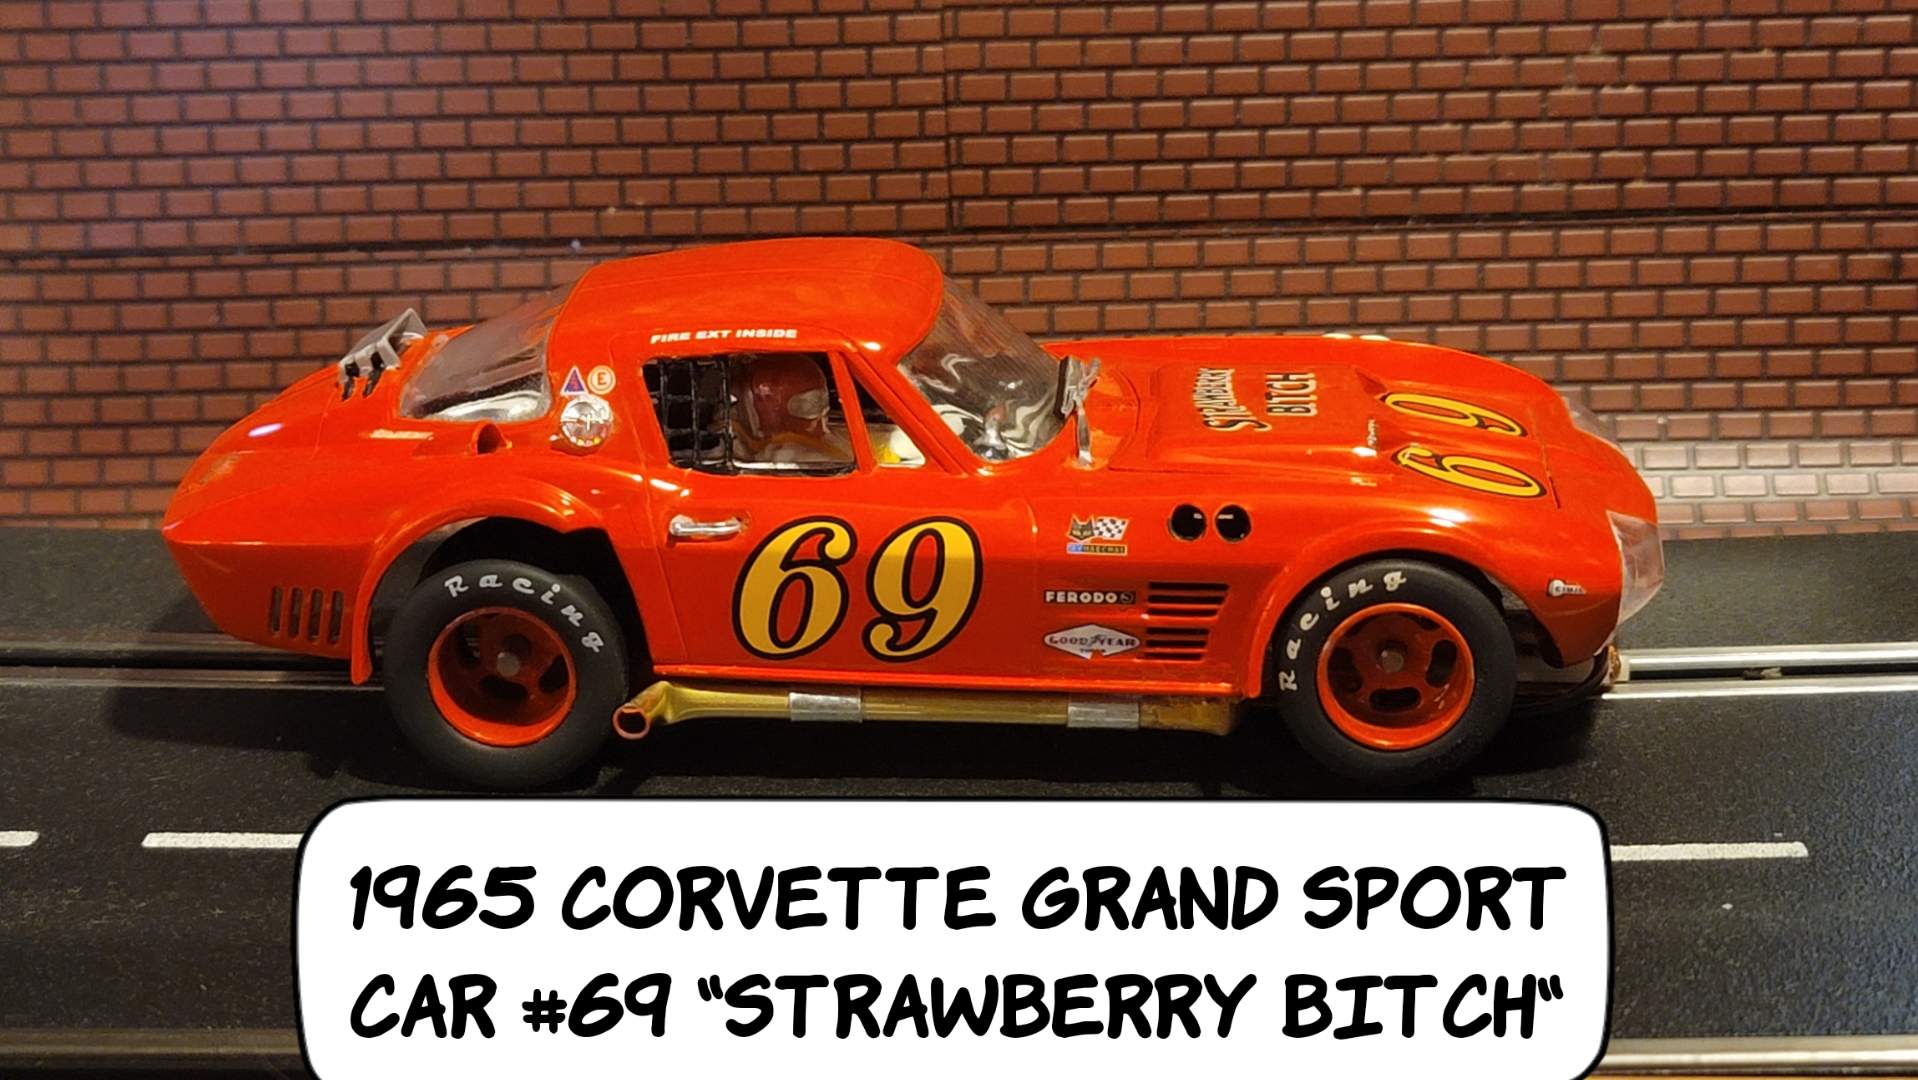 1965 Corvette Grand Sport “Strawberry Bitch” 1/24 Scale Slot Car 69 *Sale*, Save $$ vs. our Ebay Price *